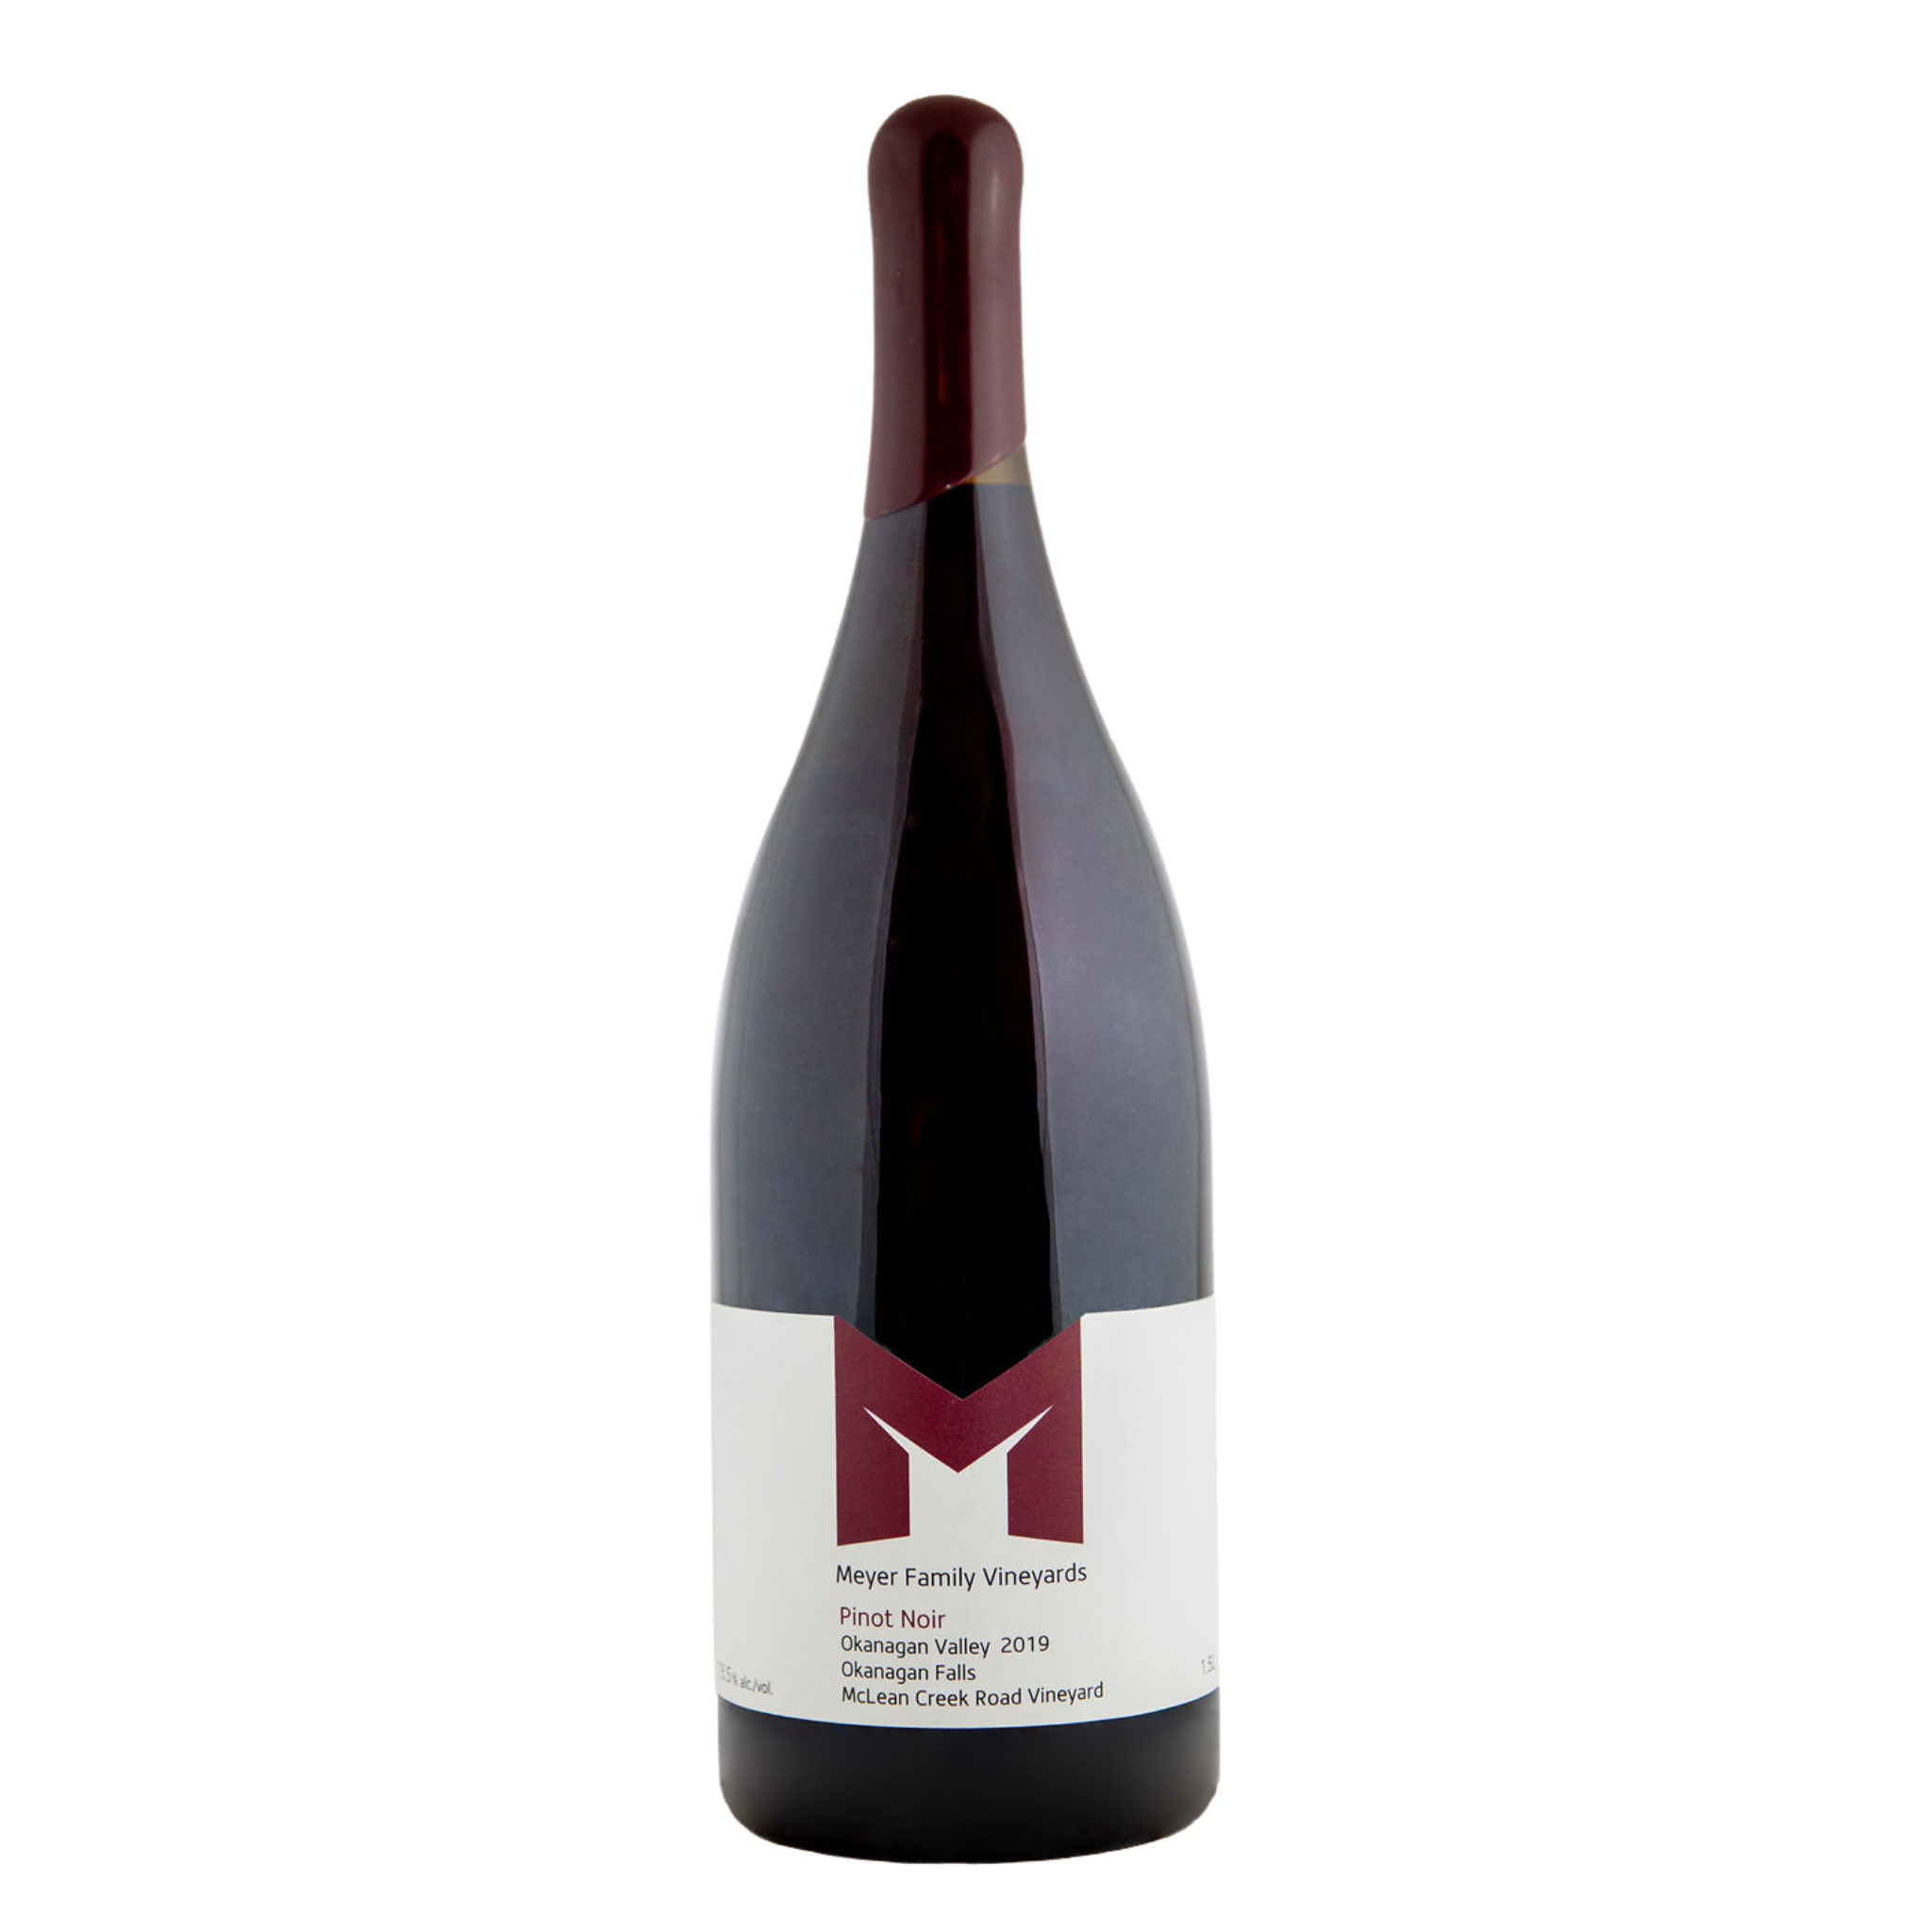 1.5L bottle of McLean Creek Rd Pinot Noir 2019